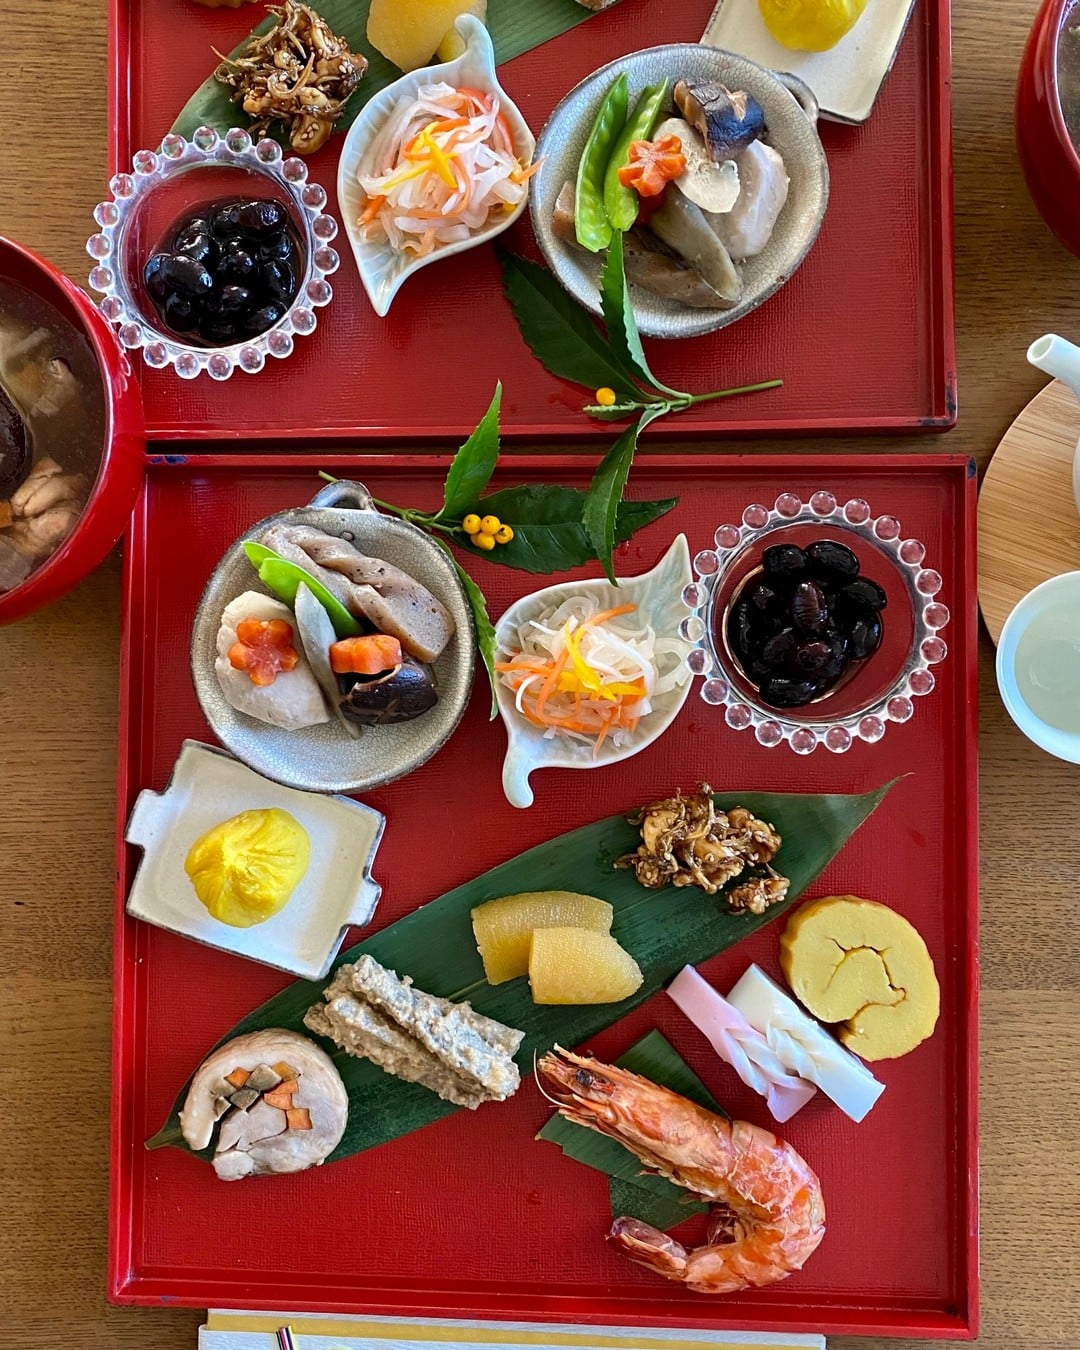 おせち料理 - New Year Dishes#おせち料理 #食事 #和食 #日本料理 #鮨 #寿司 #懐石料理 #食文化 #日本 #Japan #NewYearDishes #Cooking #Specialties #Meals #JapaneseFood #Washoku #FoodCulture #Sushi #NigiriSushi #KaisekiCuisine #Instagay